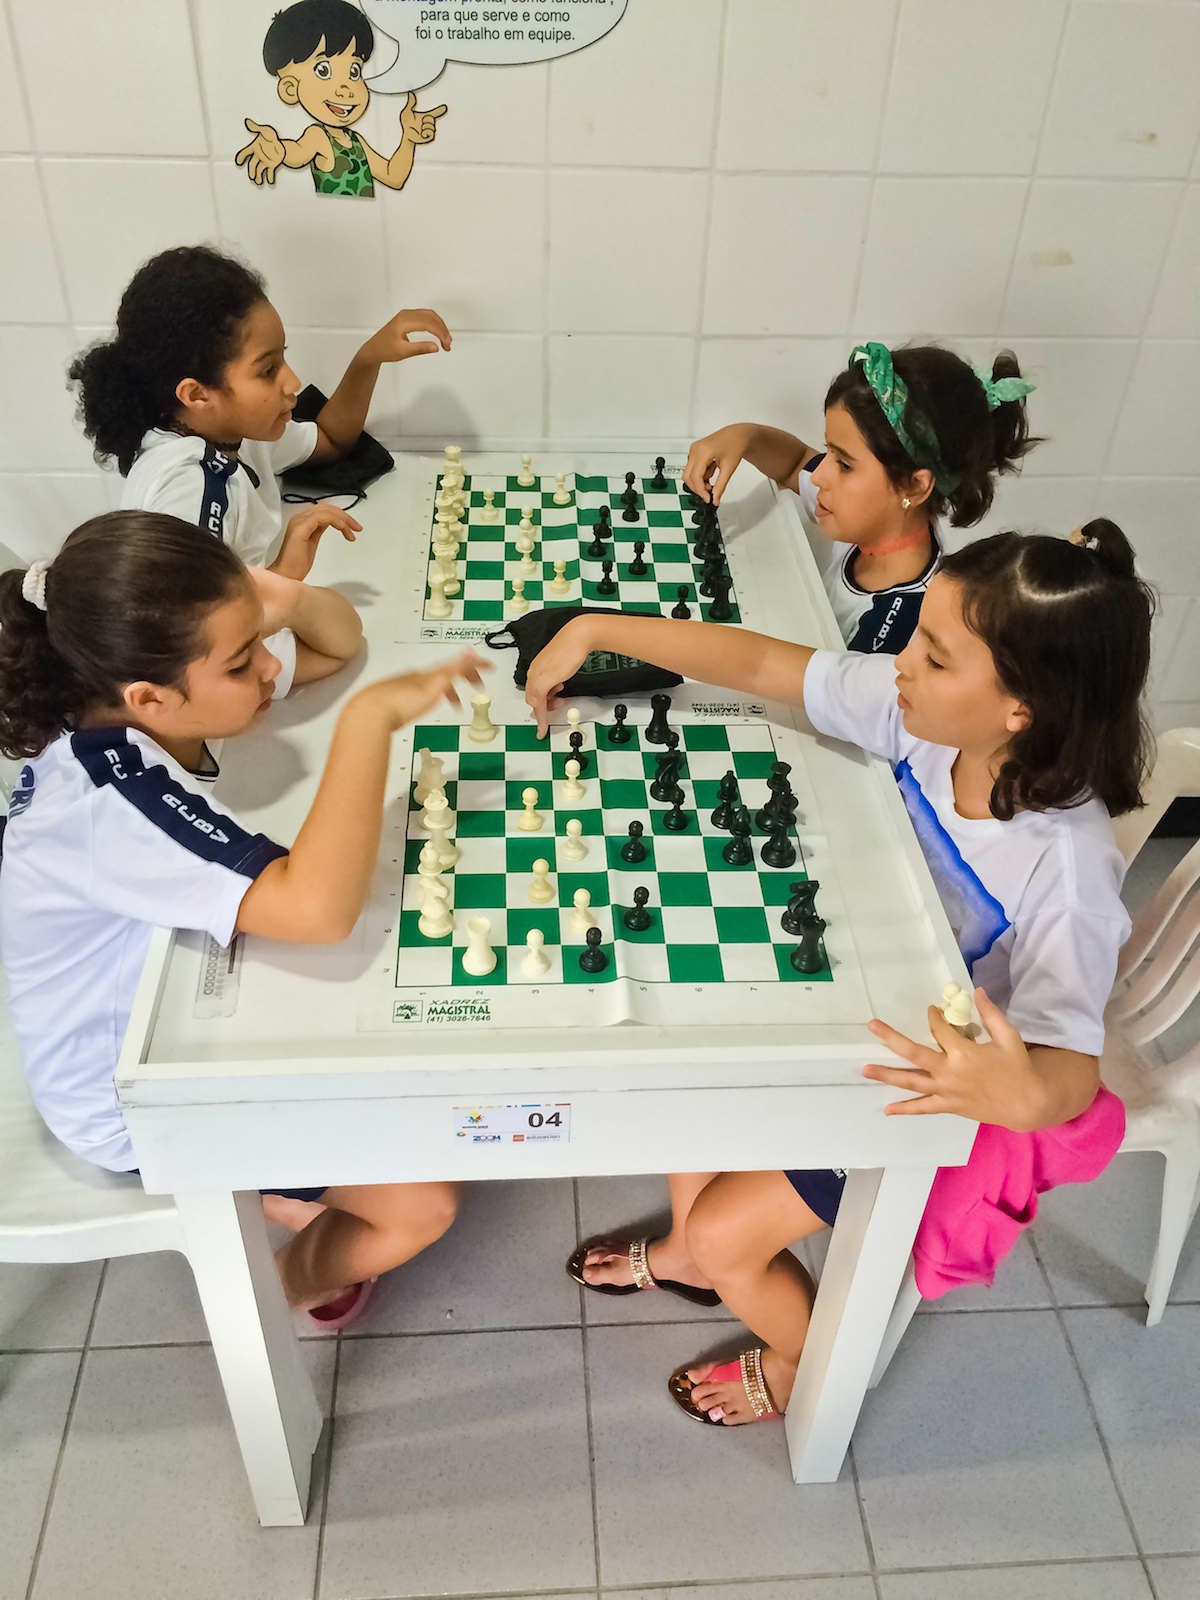 Xadrez é um desporto Xadrez é um esporte, também considerado uma arte e uma  ciência. Pode ser classificado como um jogo de tabuleiro de natureza  recreativa ou competitiva para dois jogadores, sendo